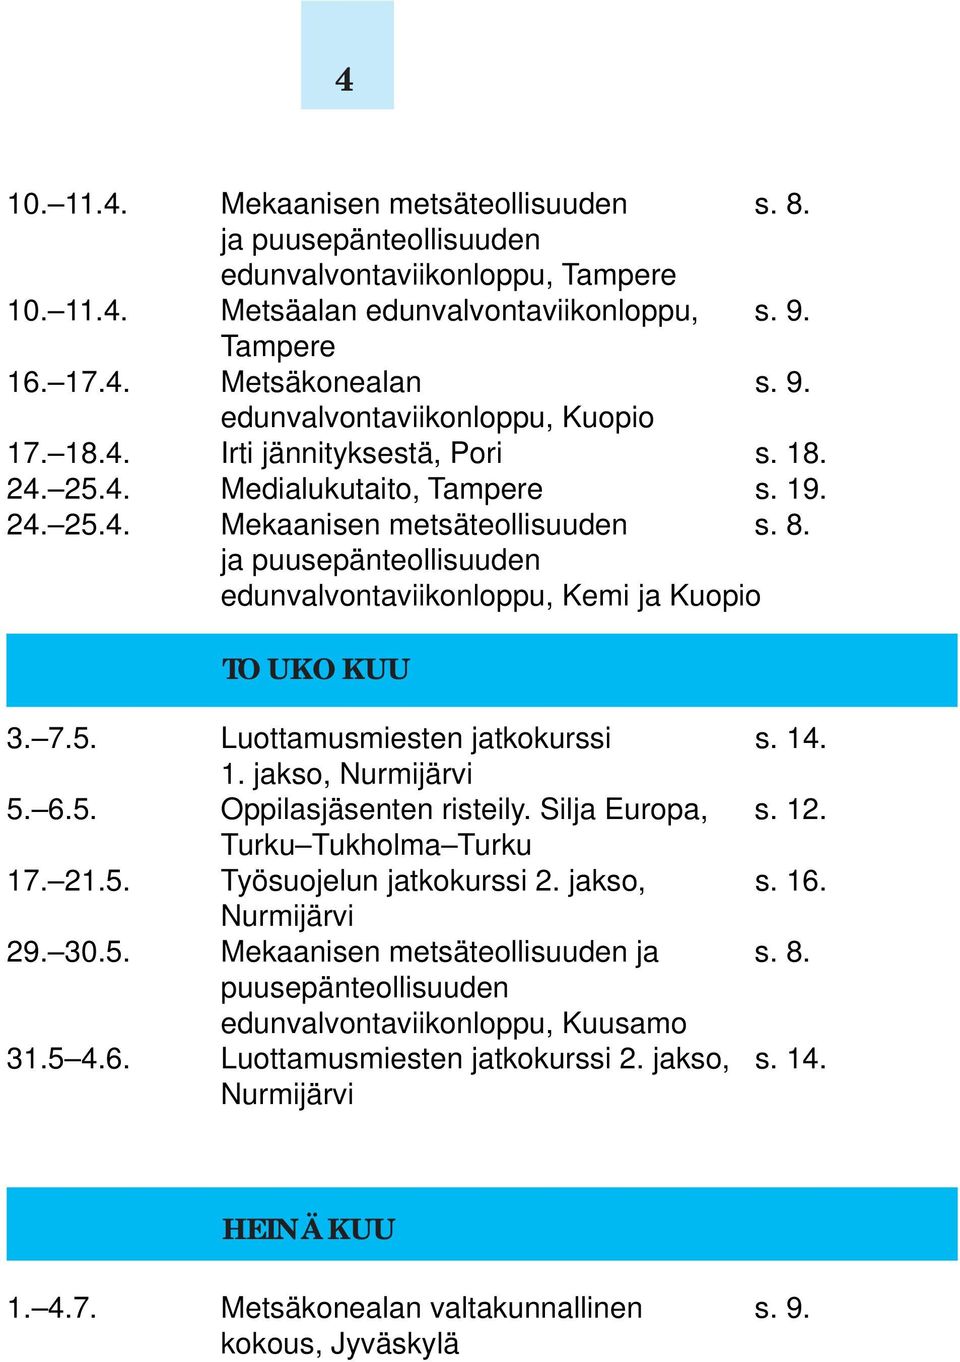 7.5. Luottamusmiesten jatkokurssi s. 14. 1. jakso, Nurmijärvi 5. 6.5. Oppilasjäsenten risteily. Silja Europa, s. 12. Turku Tukholma Turku 17. 21.5. Työsuojelun jatkokurssi 2. jakso, s. 16.